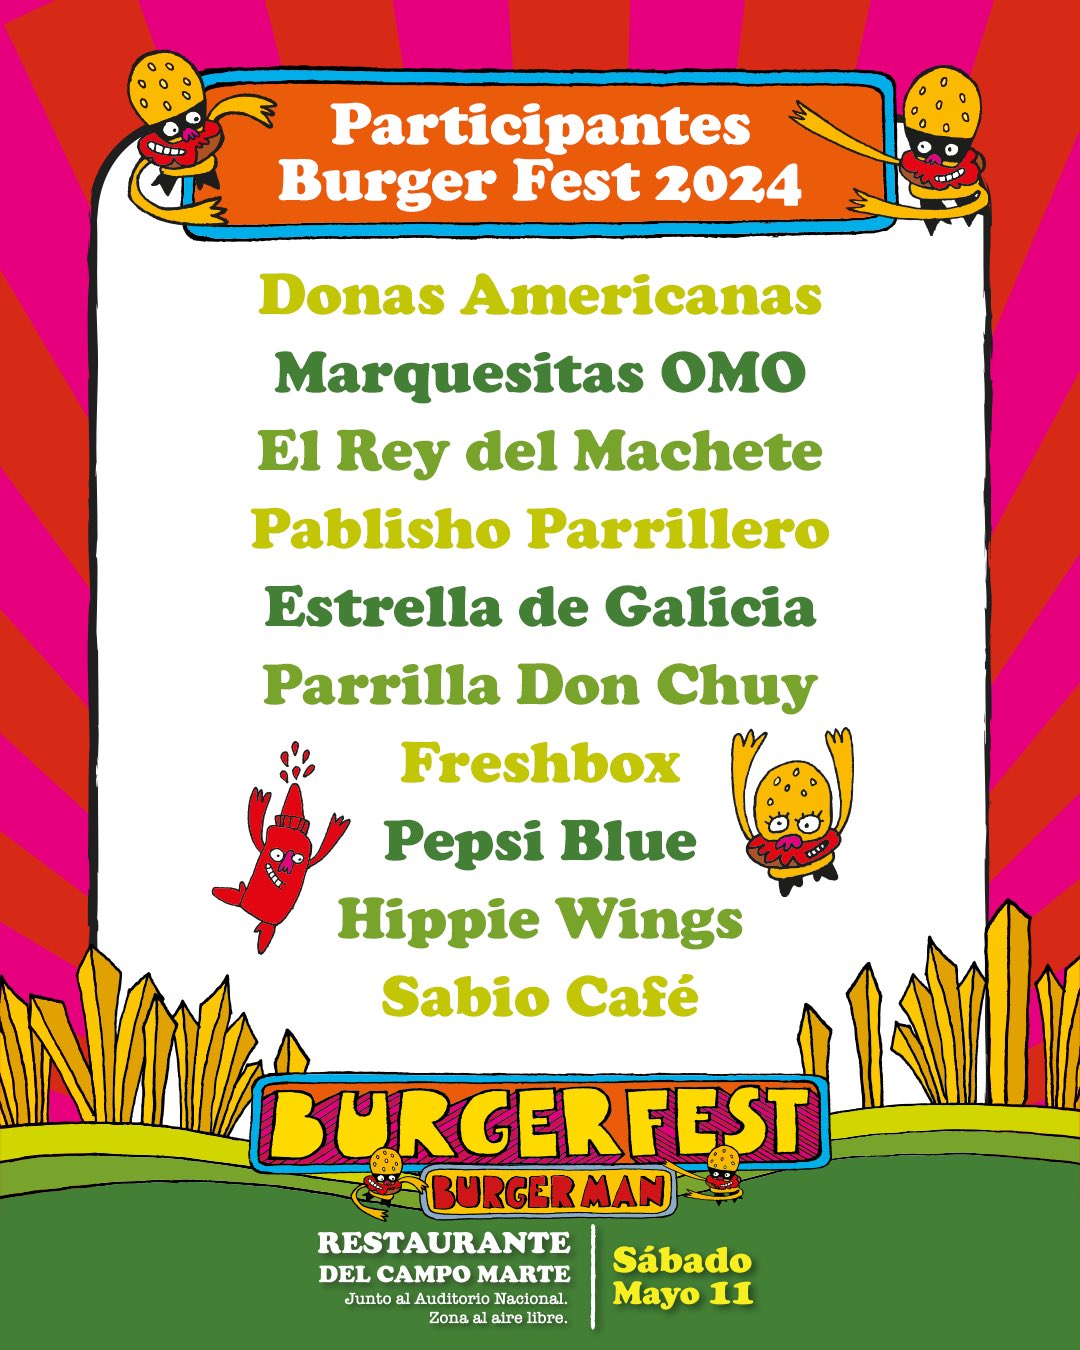 Burger Fest 2024 tendrá más de 30 restaurantes presentes 3